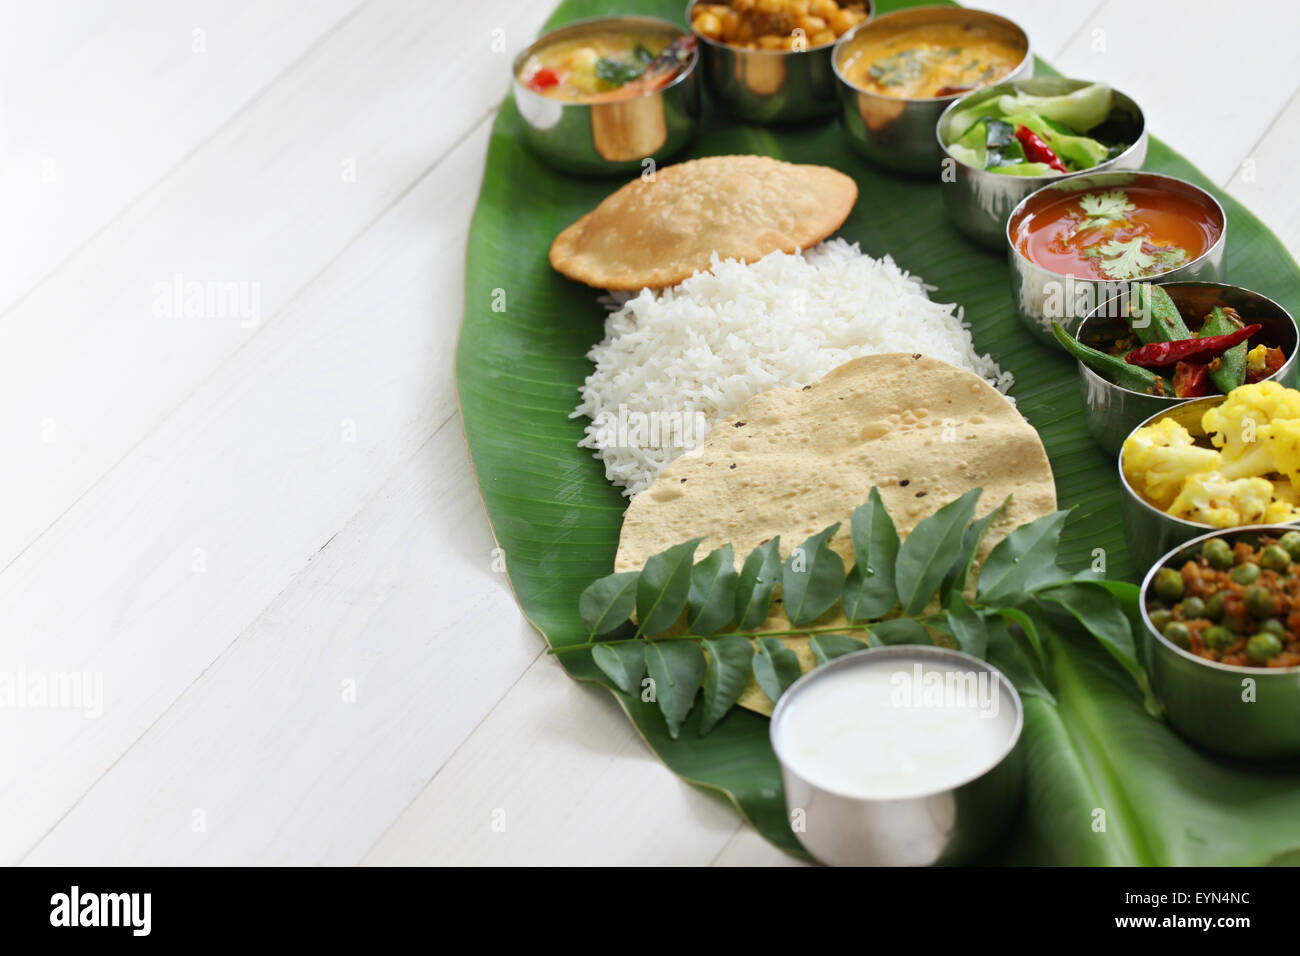 Repas servis sur des feuilles de banane, une cuisine traditionnelle d'Inde du sud Banque D'Images